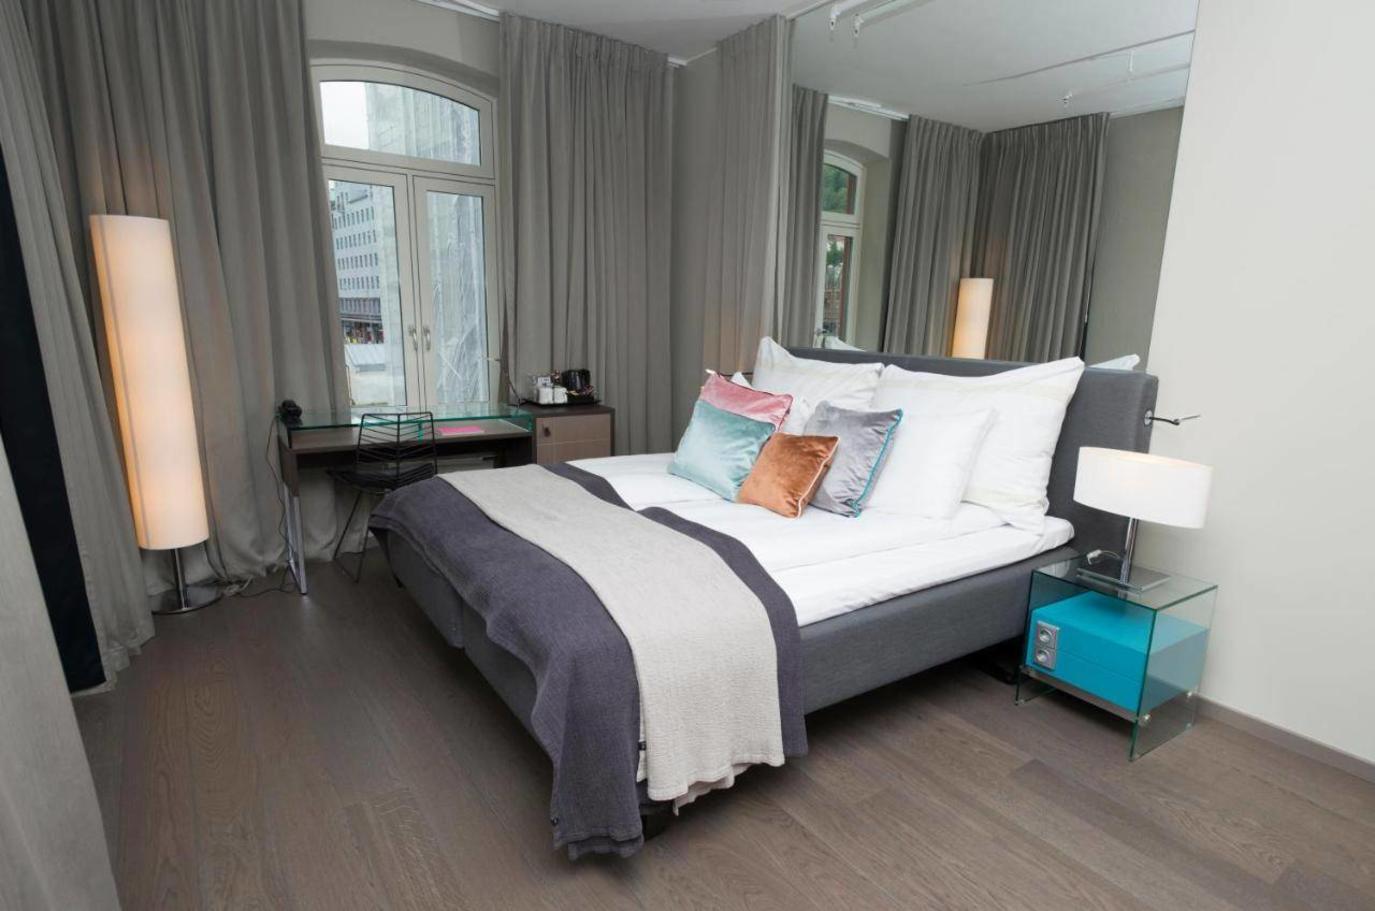 باص يحتوي على غرفة نوم luxury home design